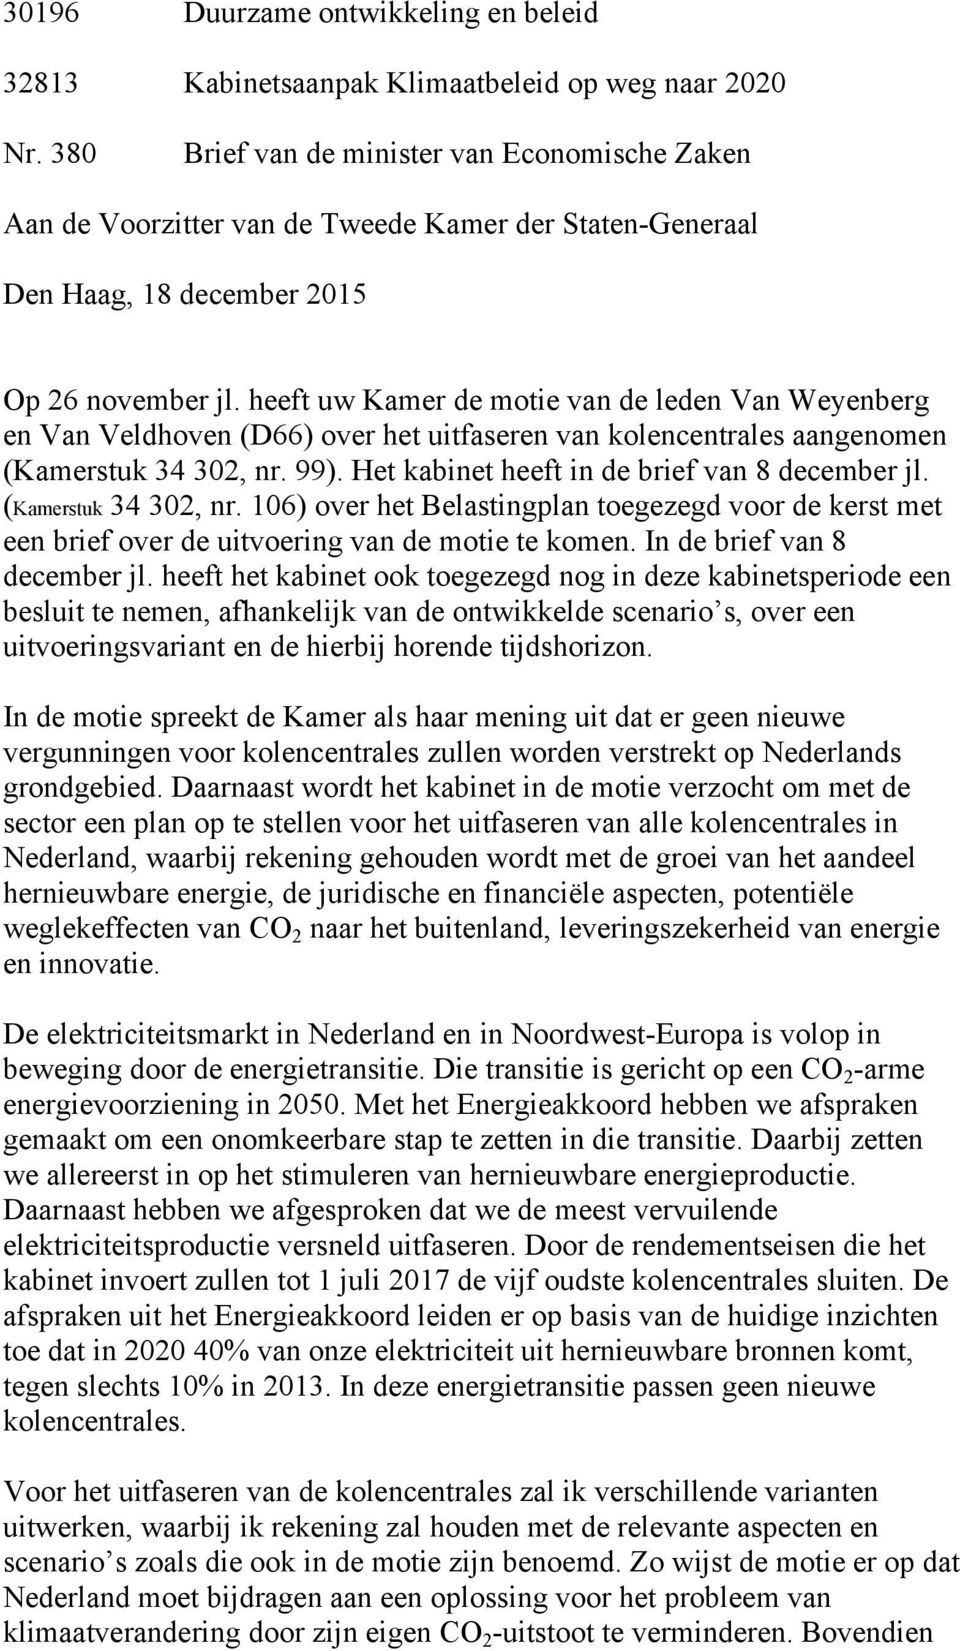 heeft uw Kamer de motie van de leden Van Weyenberg en Van Veldhoven (D66) over het uitfaseren van kolencentrales aangenomen (Kamerstuk 34 302, nr. 99). Het kabinet heeft in de brief van 8 december jl.